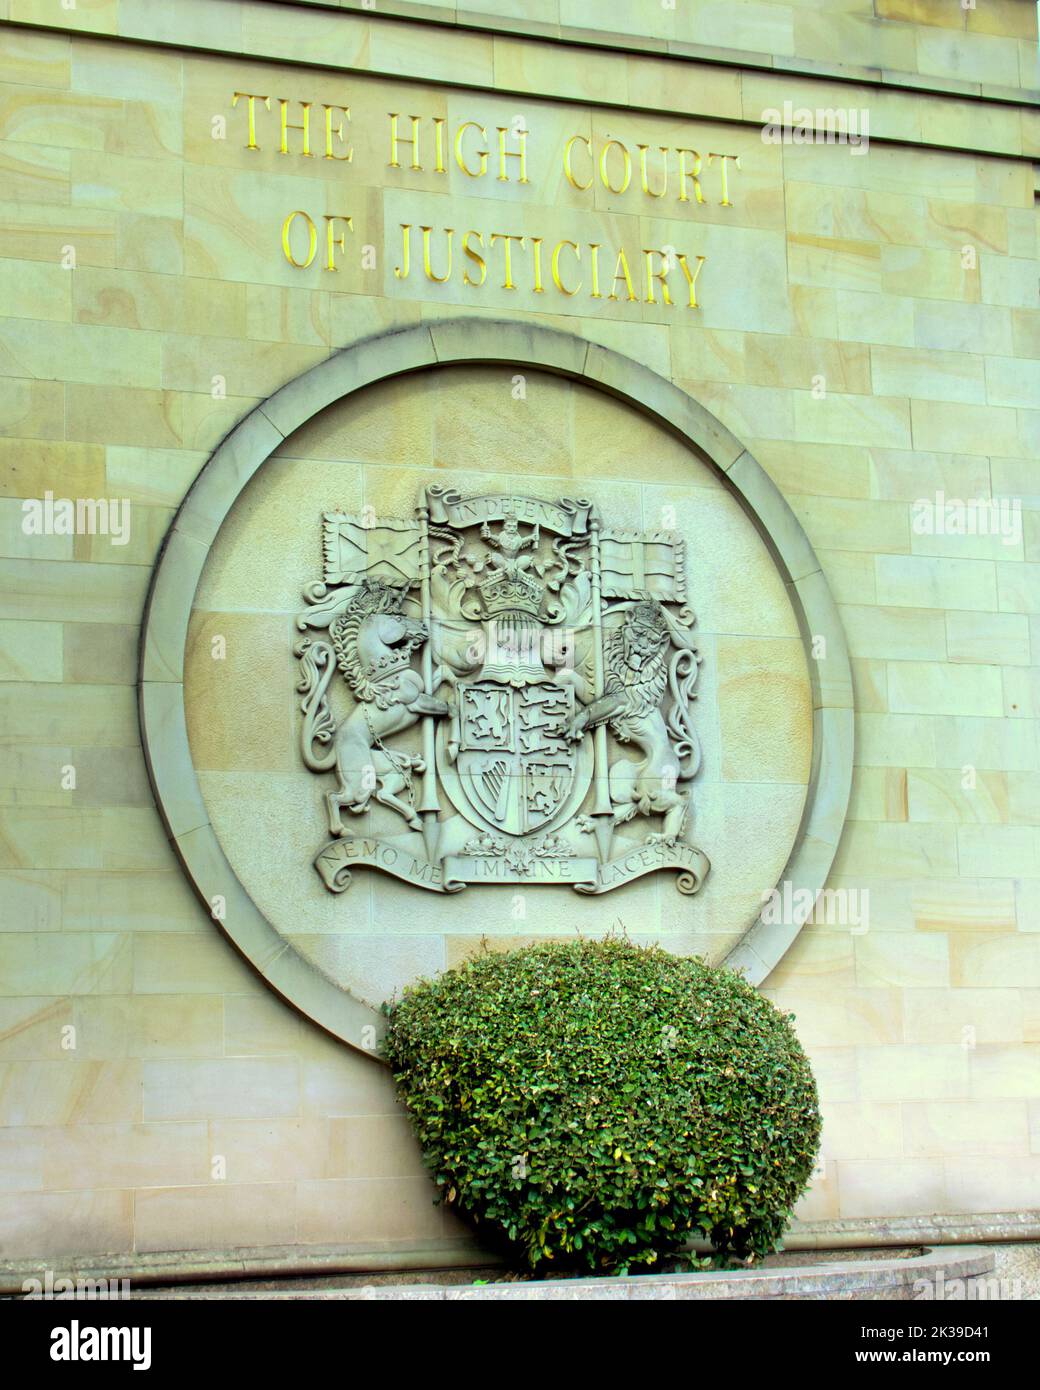 High court of Justiciary, panneau avant, Glasgow, Écosse, Royaume-Uni Banque D'Images